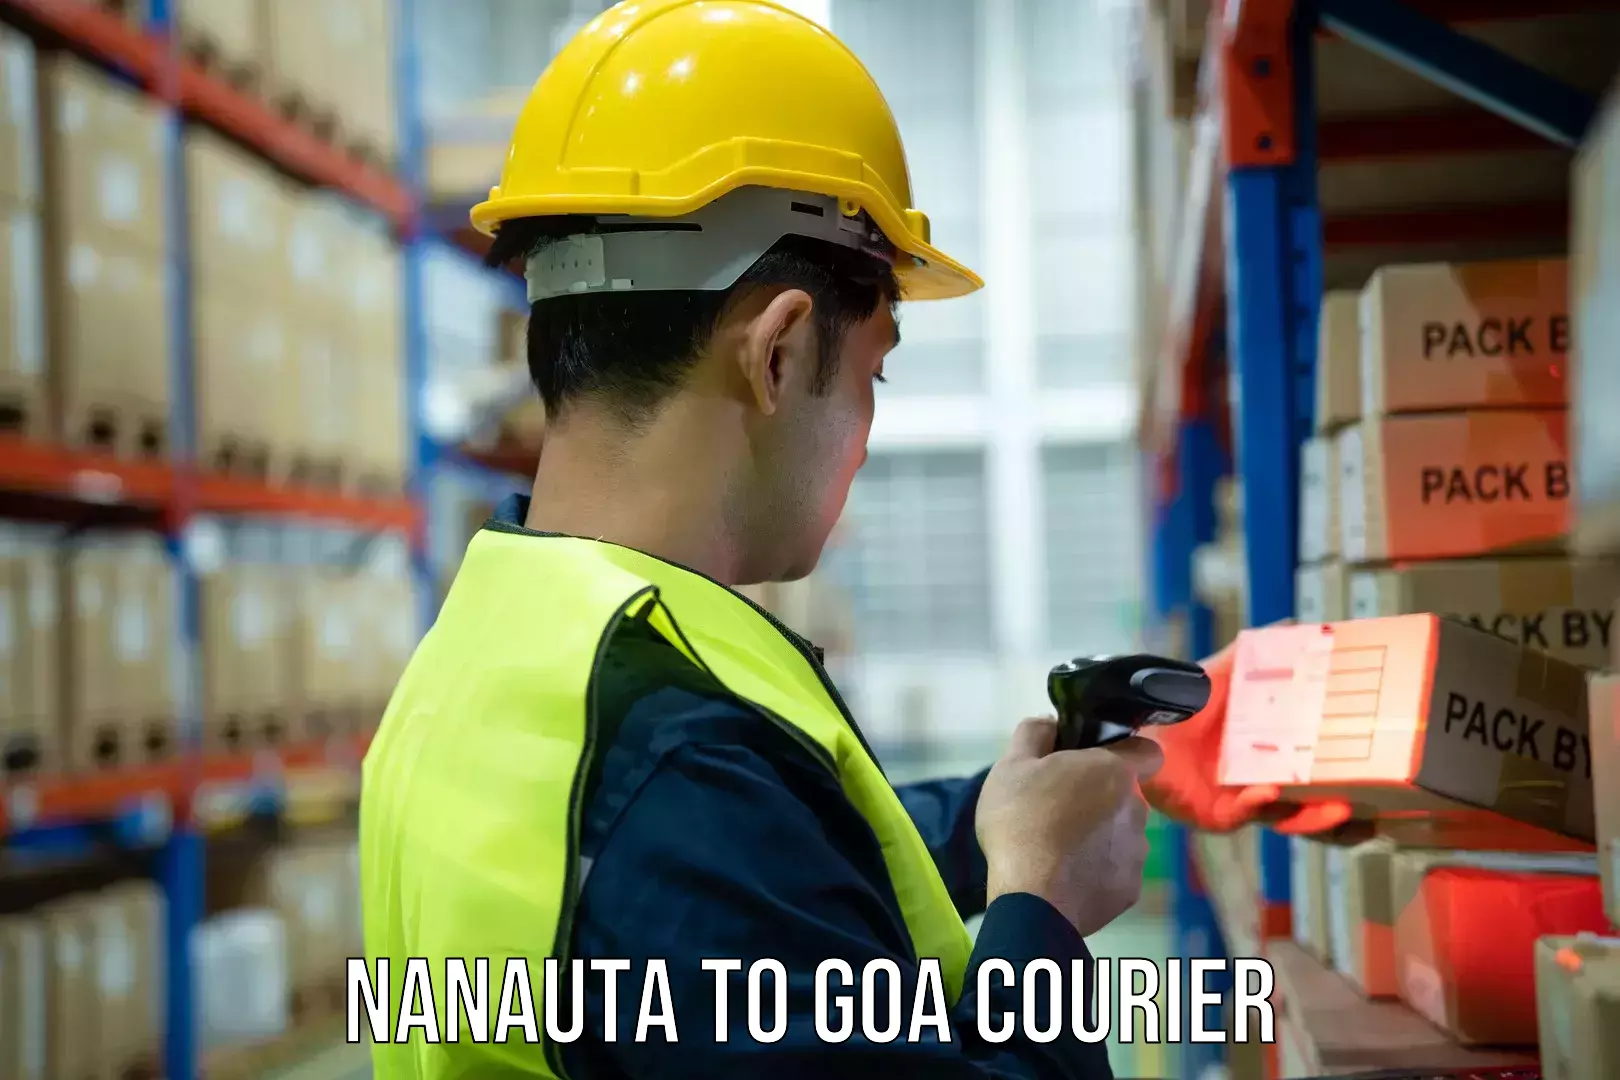 Specialized shipment handling Nanauta to Canacona